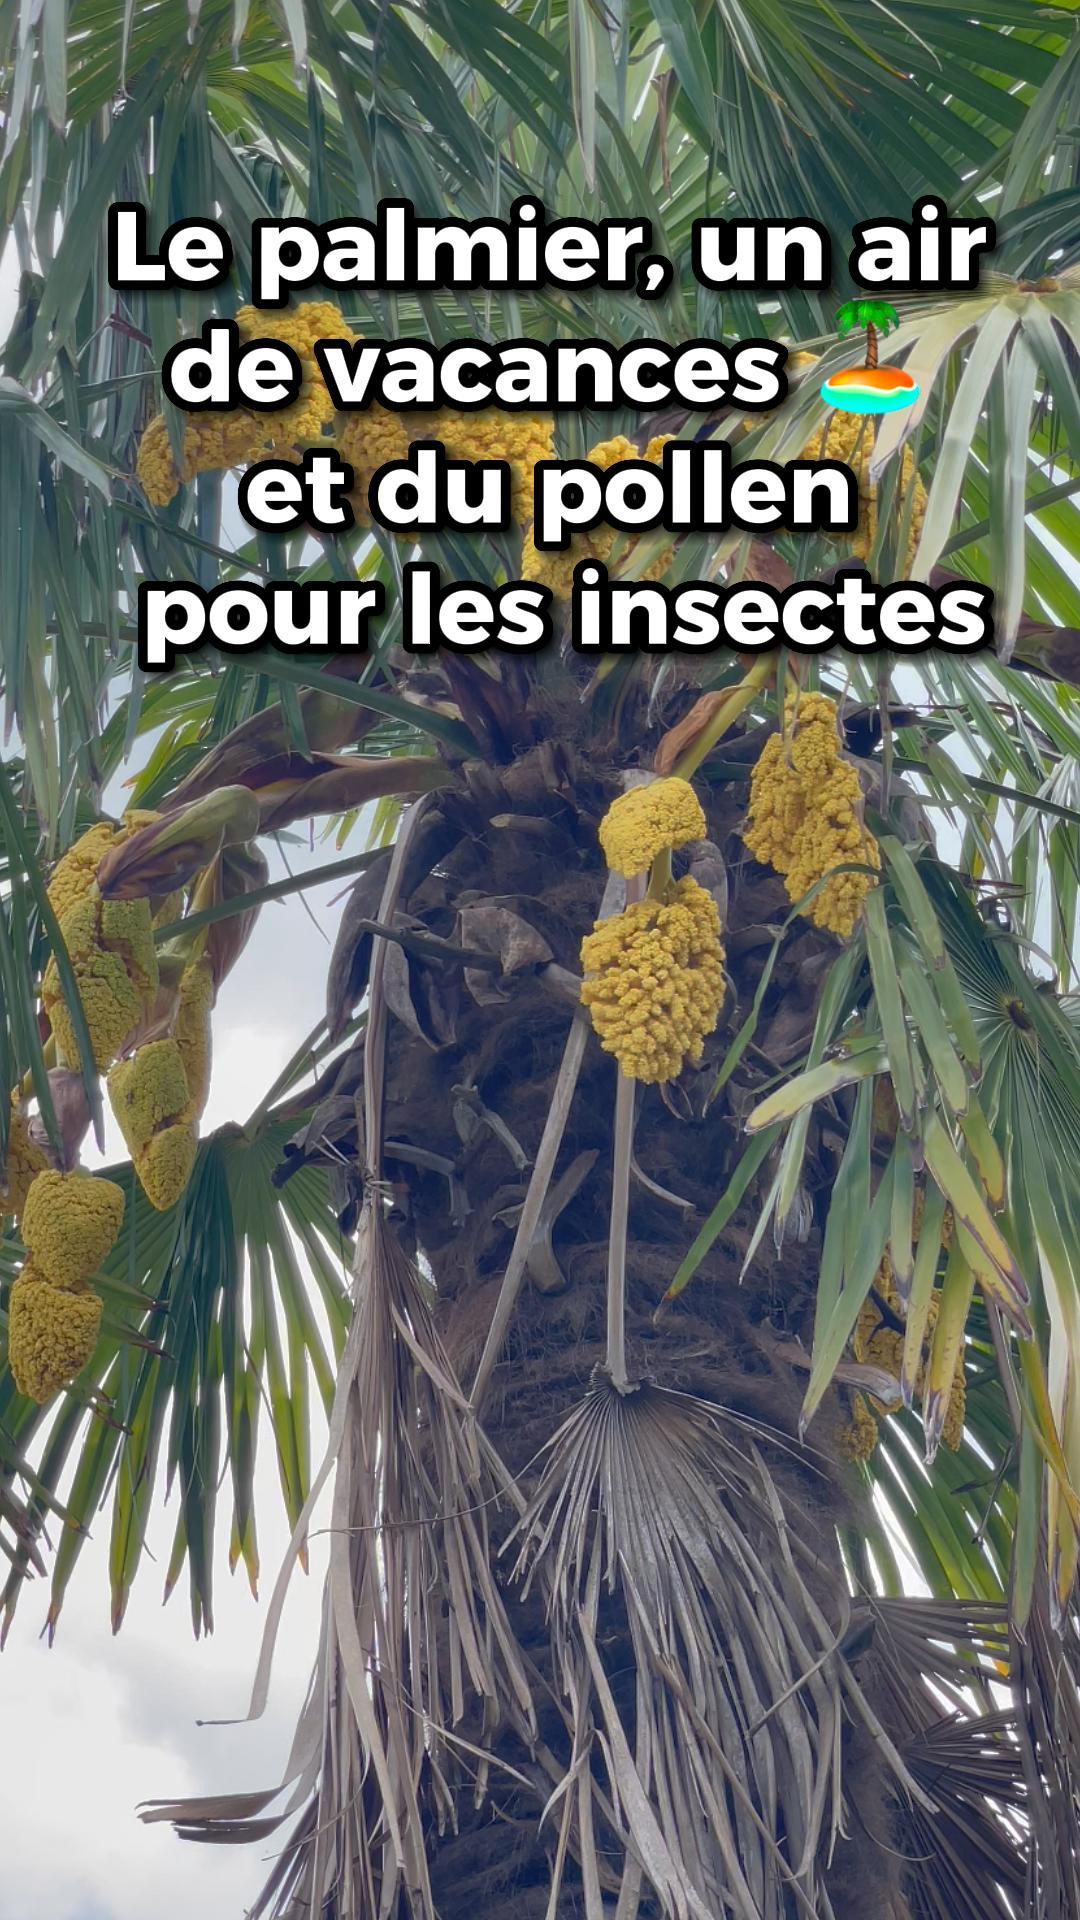 La vidéo Le palmier, un air de vacances et du pollen pour les abeilles de Mellifere.com